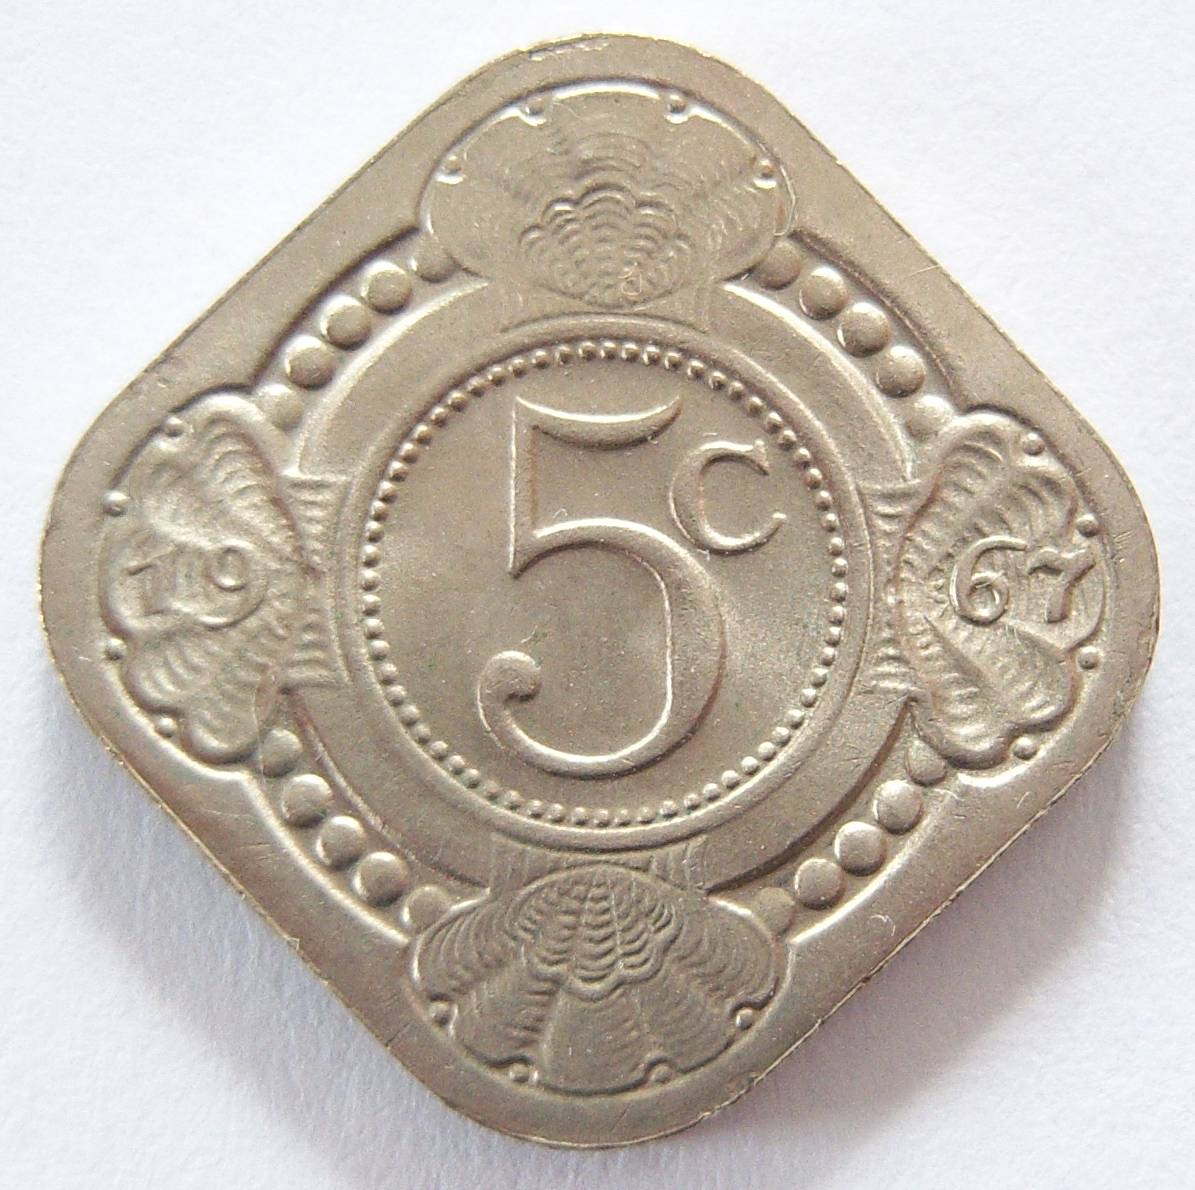  Niederländische Antillen 5 Cent 1967   